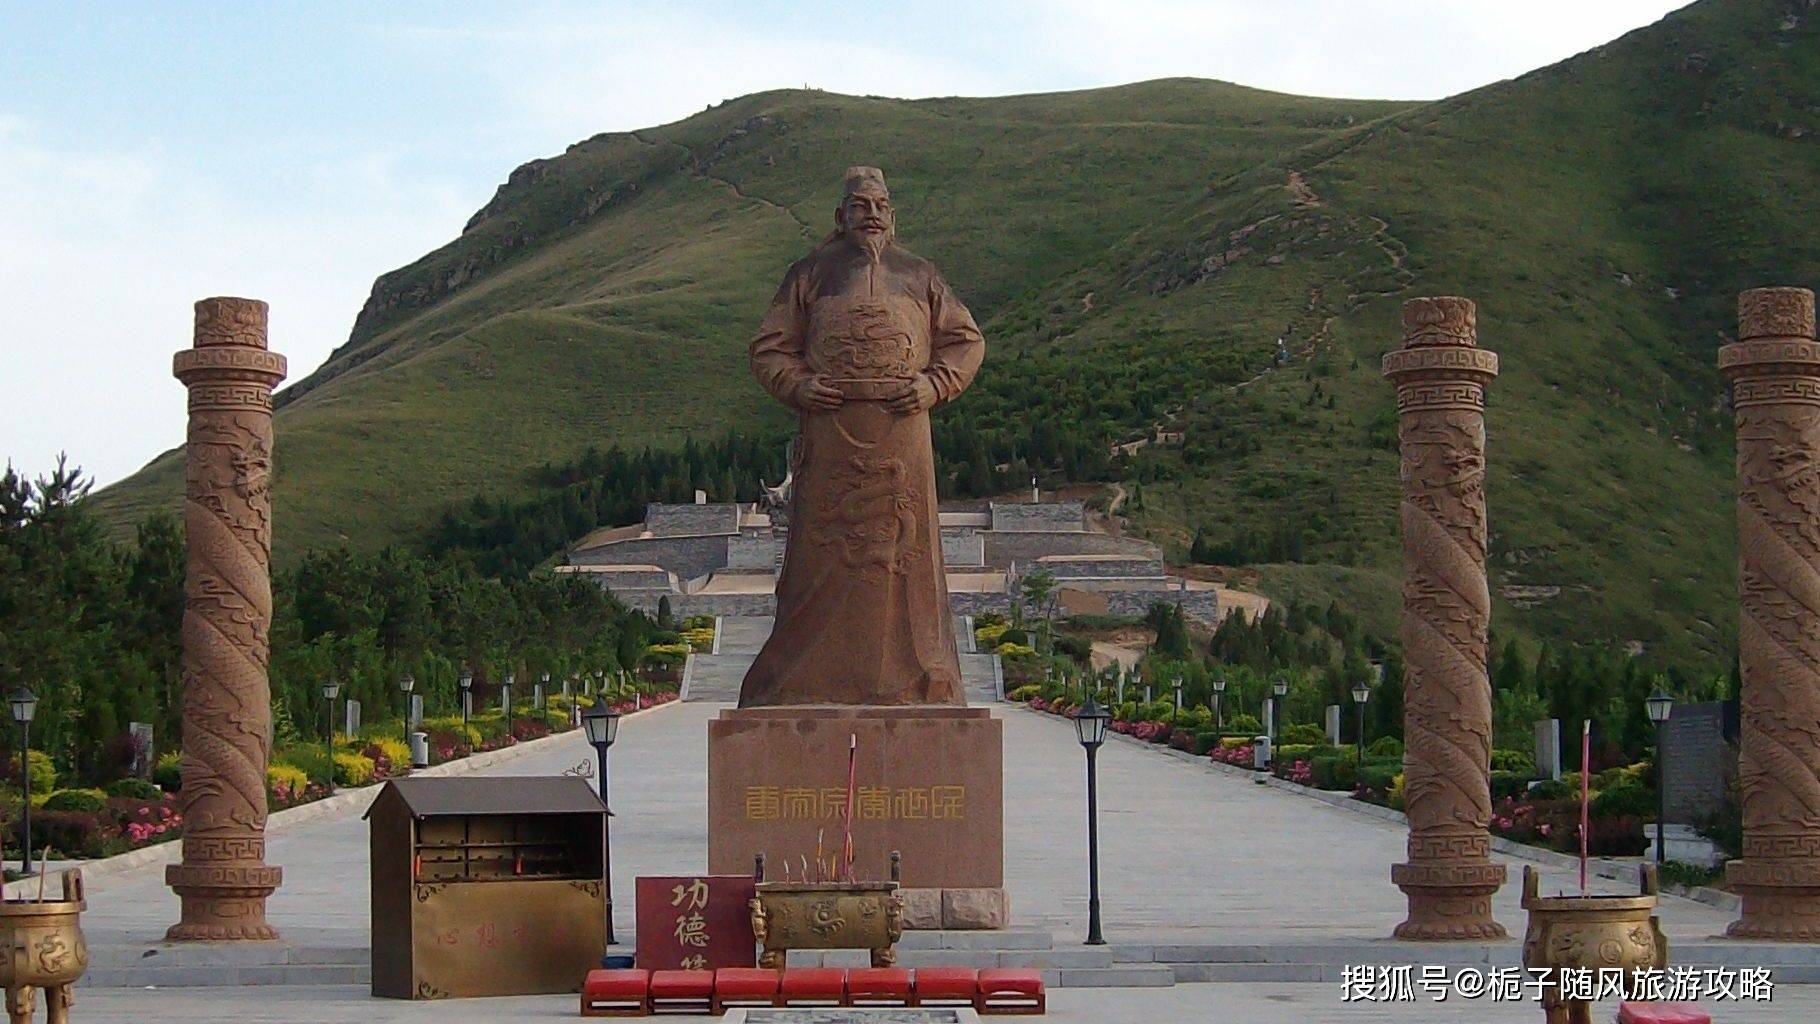 原创陕西省18个重点文物旅游大县之一——礼泉县